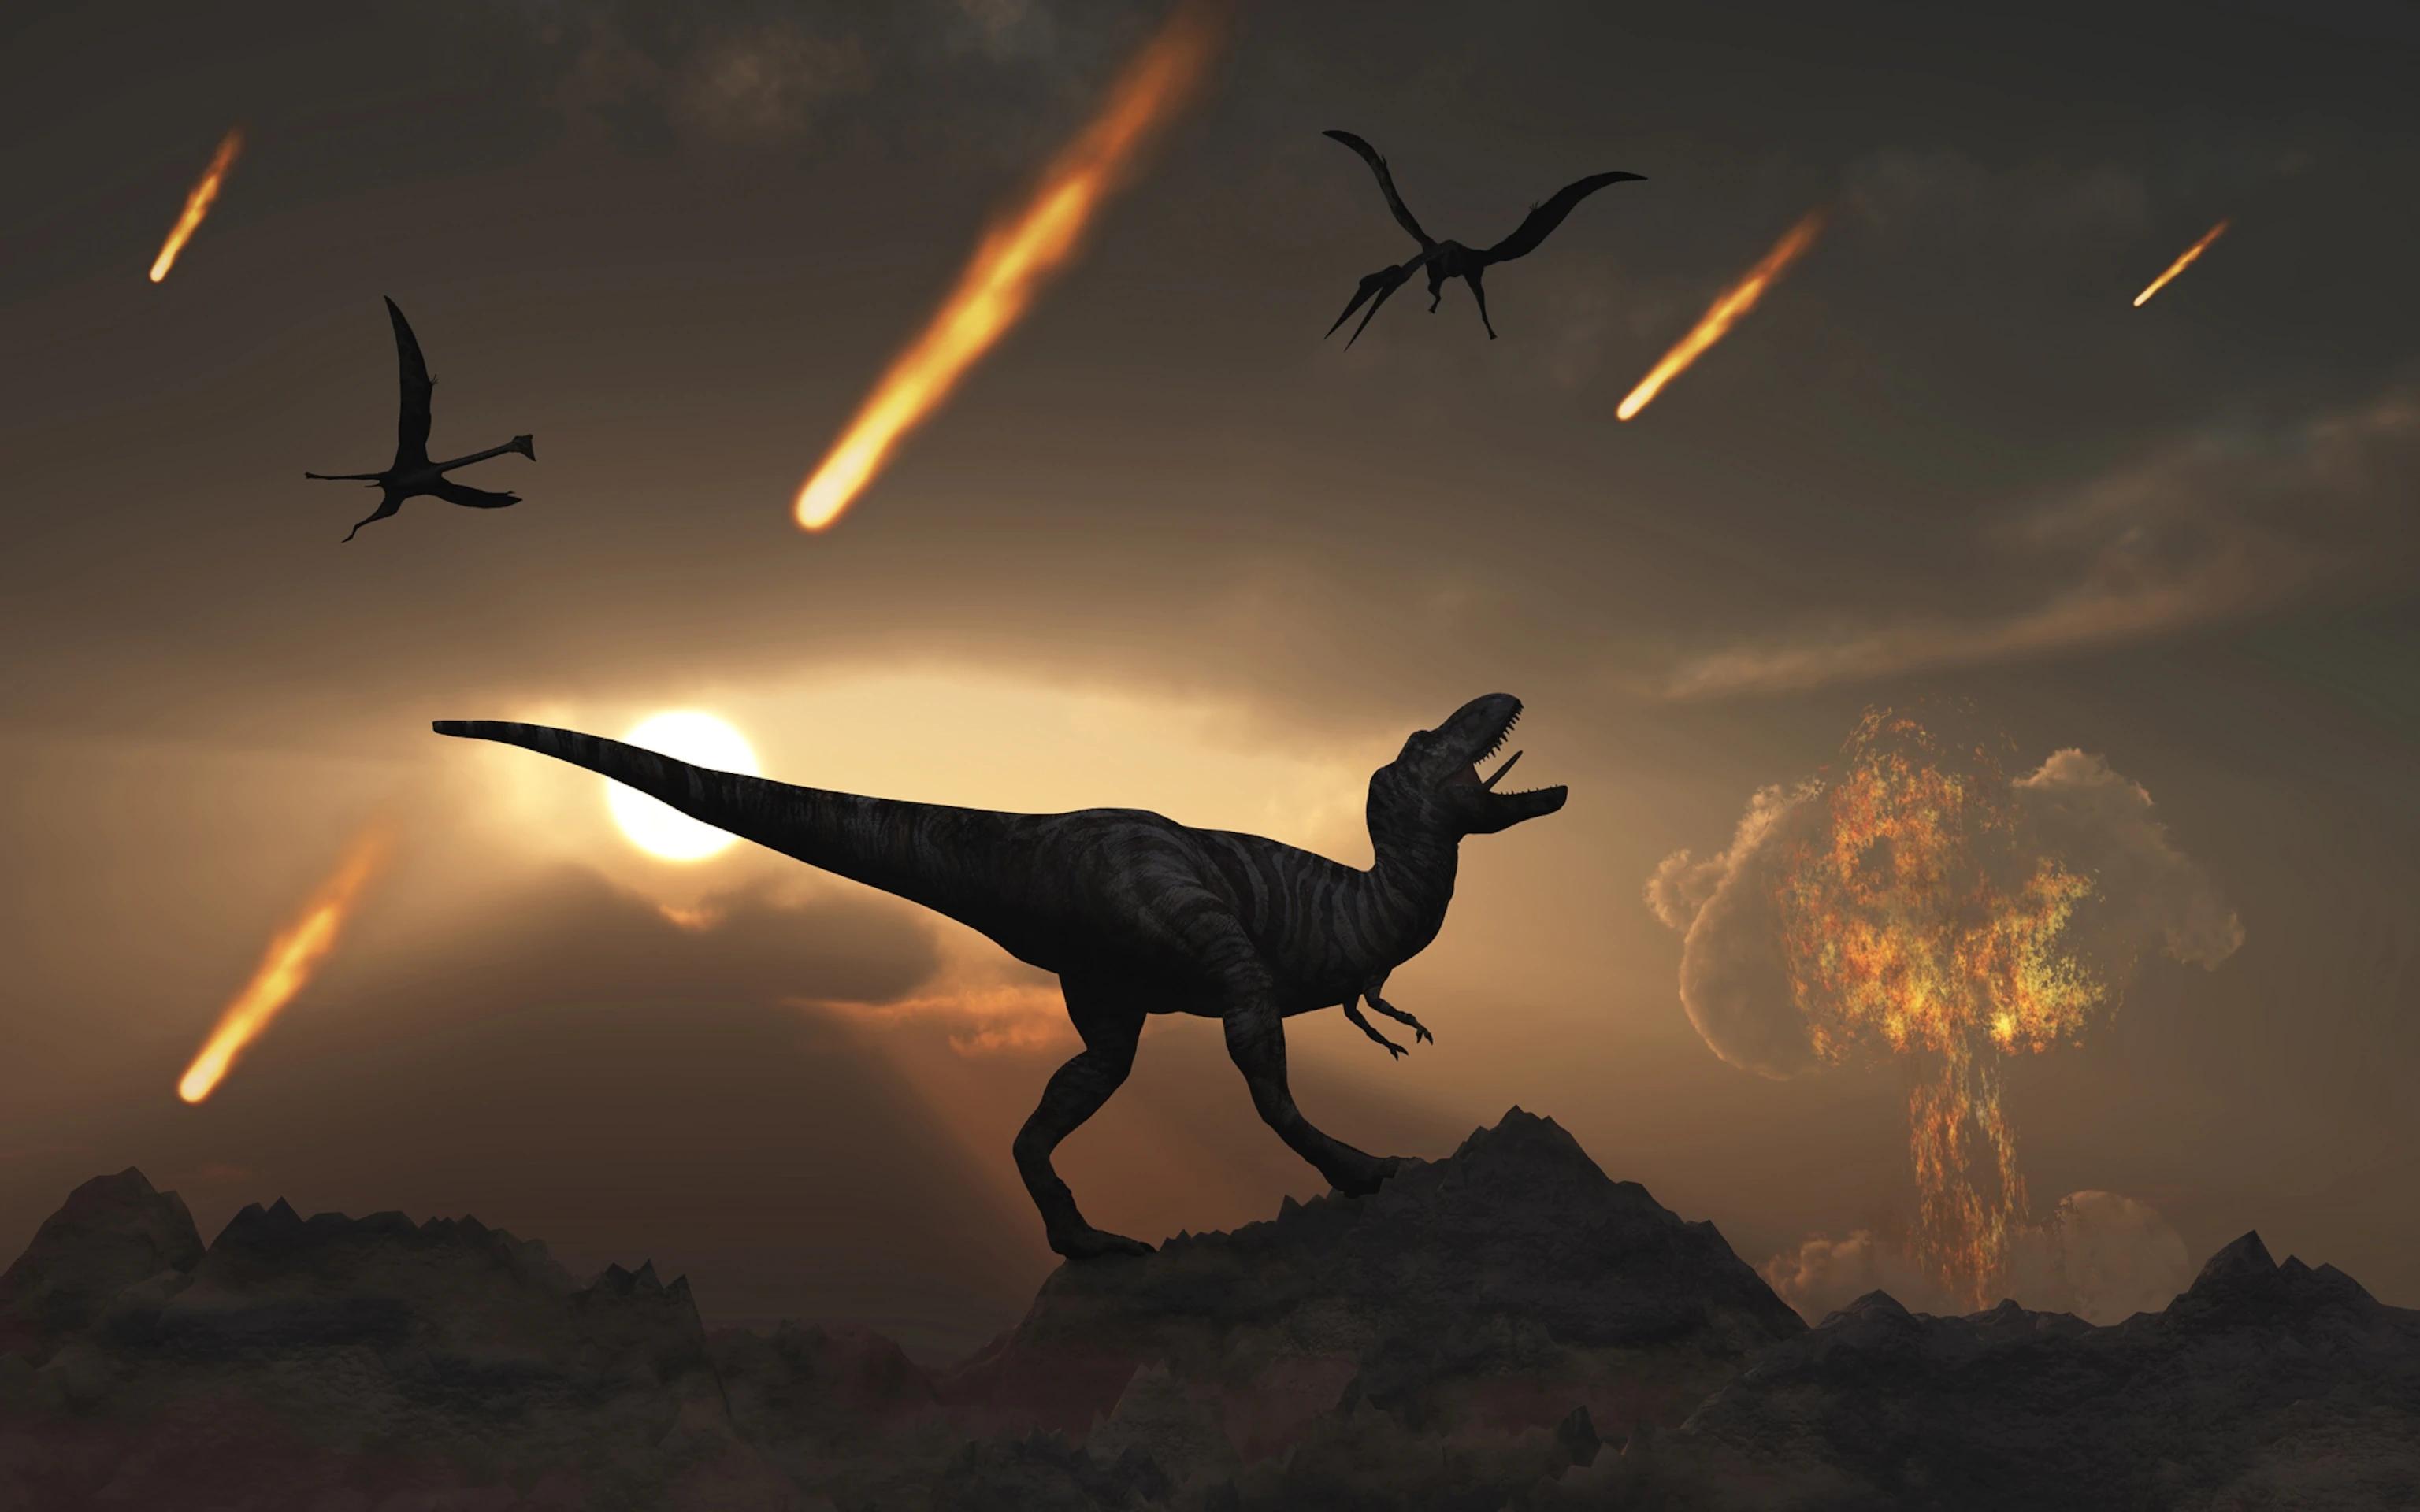 称霸地球16亿年的恐龙,为何会突然灭绝,那天到底发生了什么?